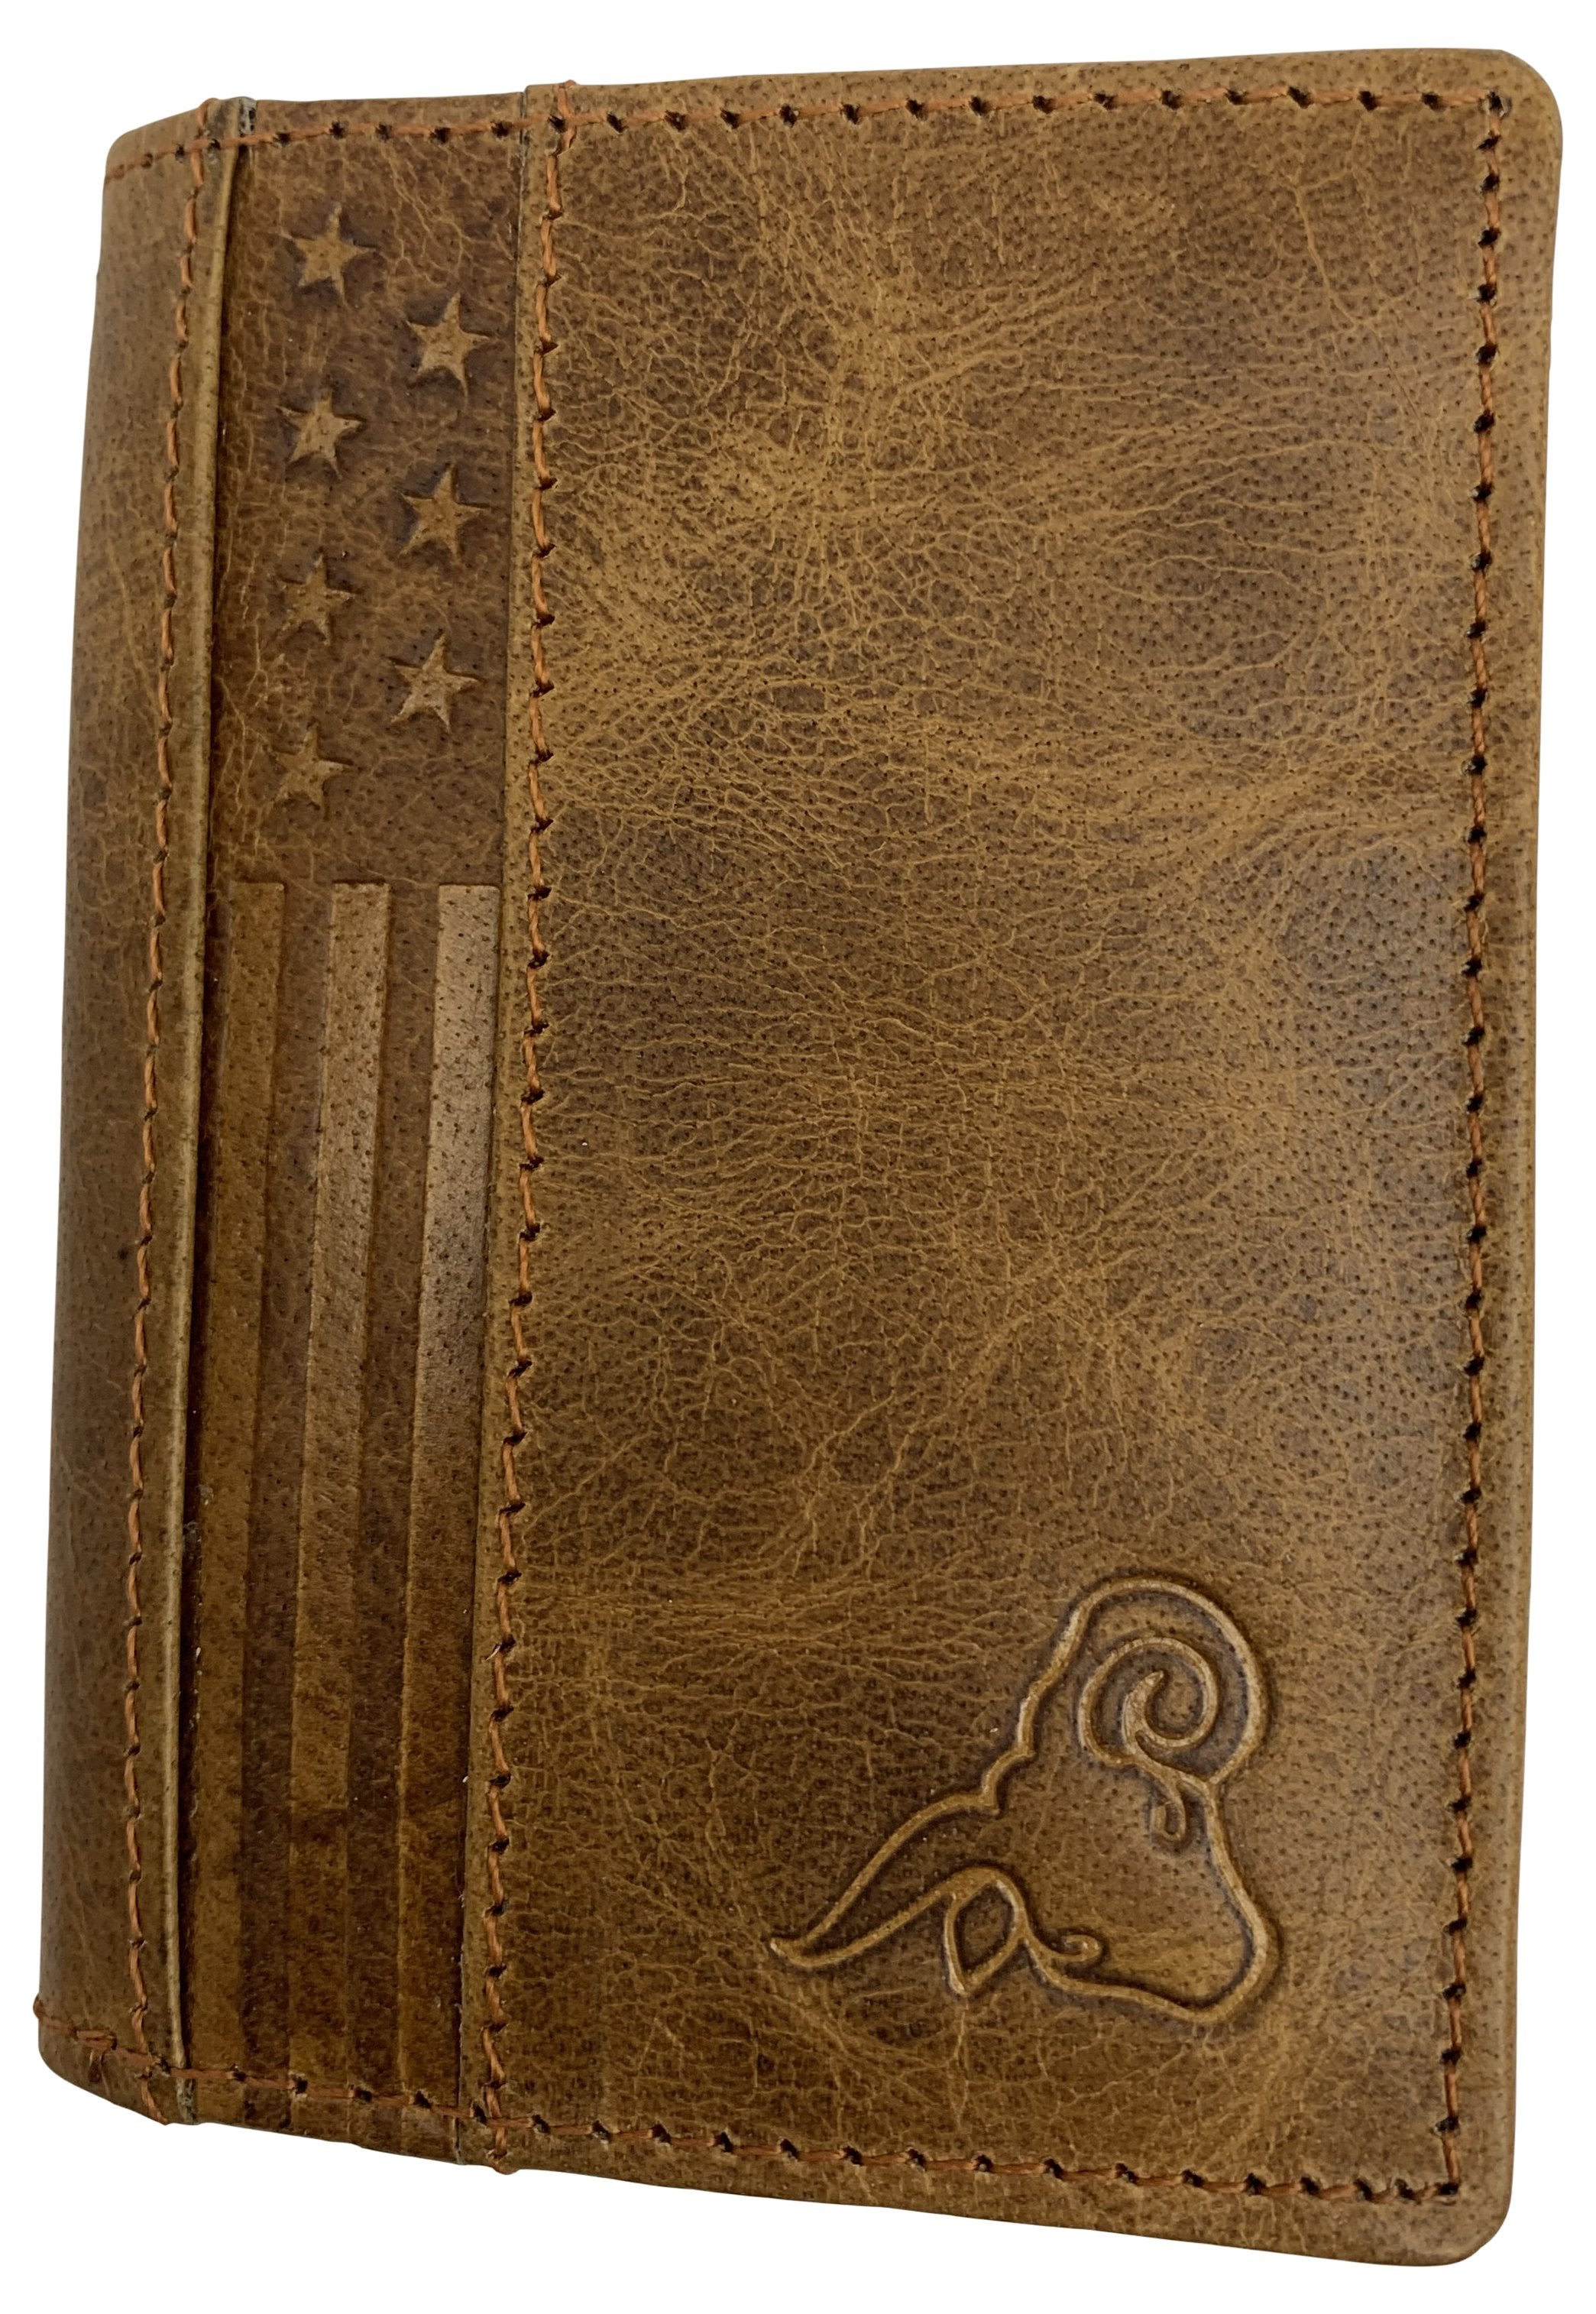 Men's Woodland wallet